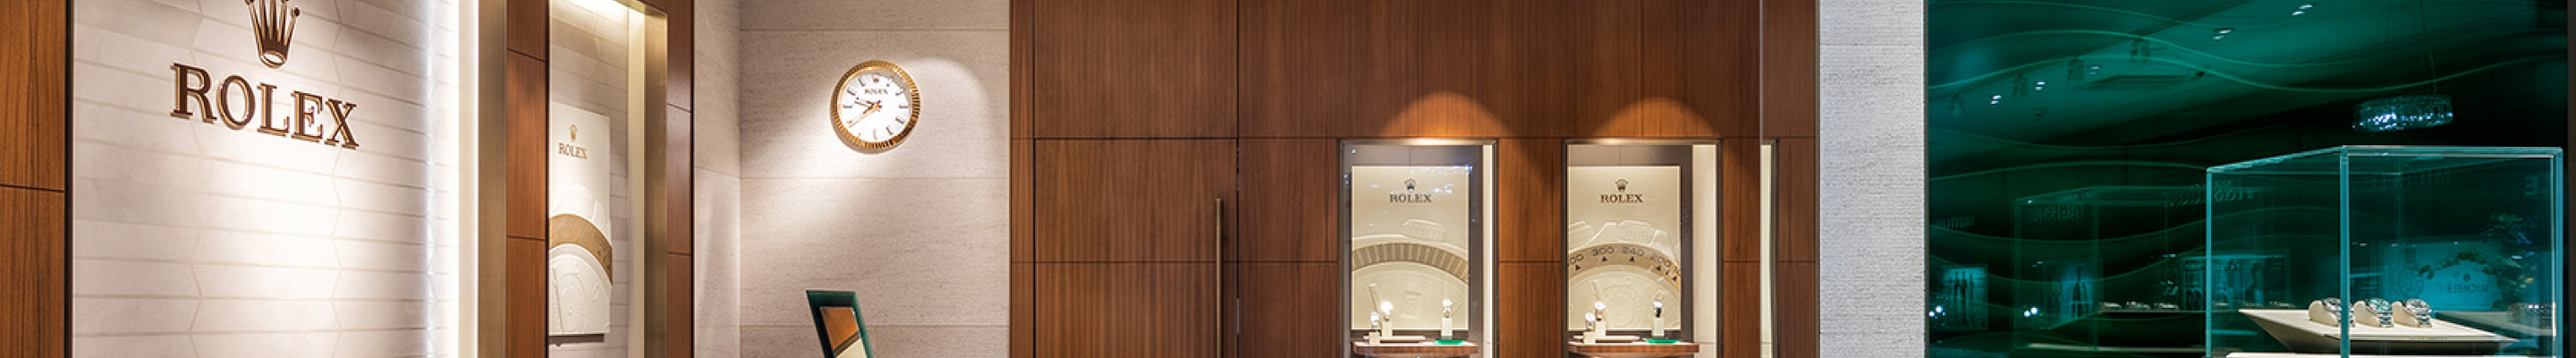 Gerald Peters Rolex Showroom in New York